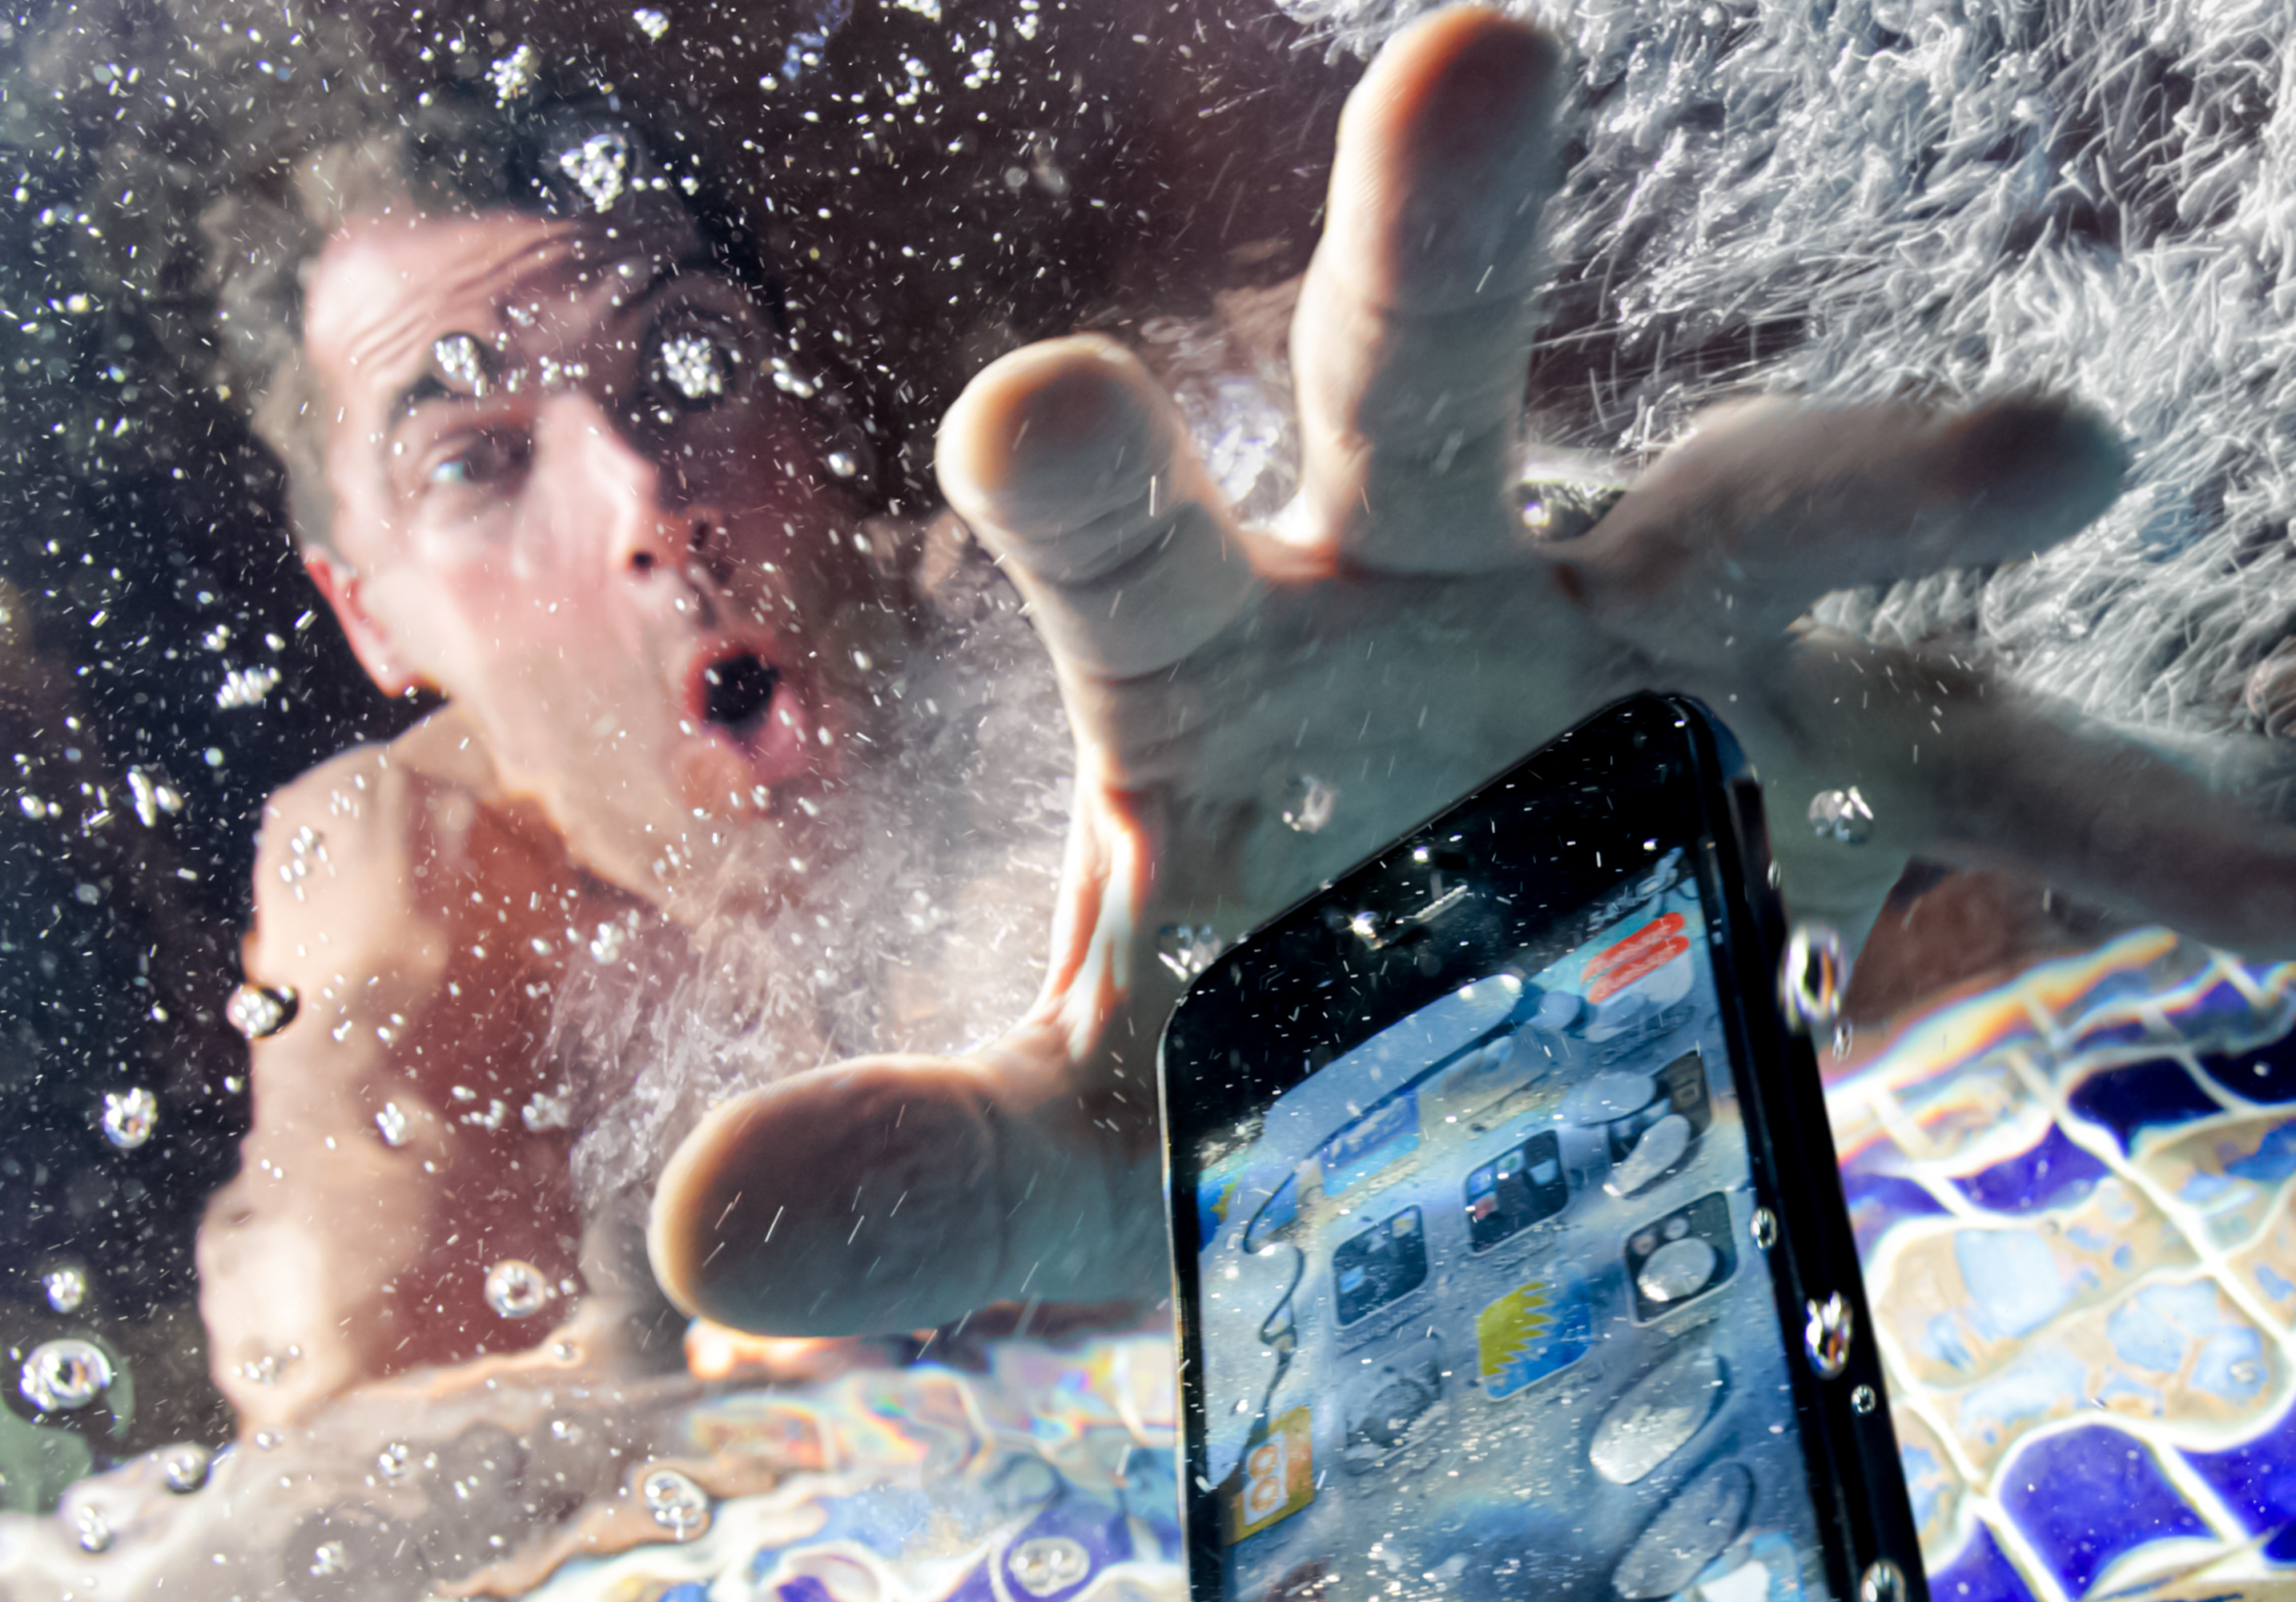 Можно ли сушить феном айфон если он упал в воду